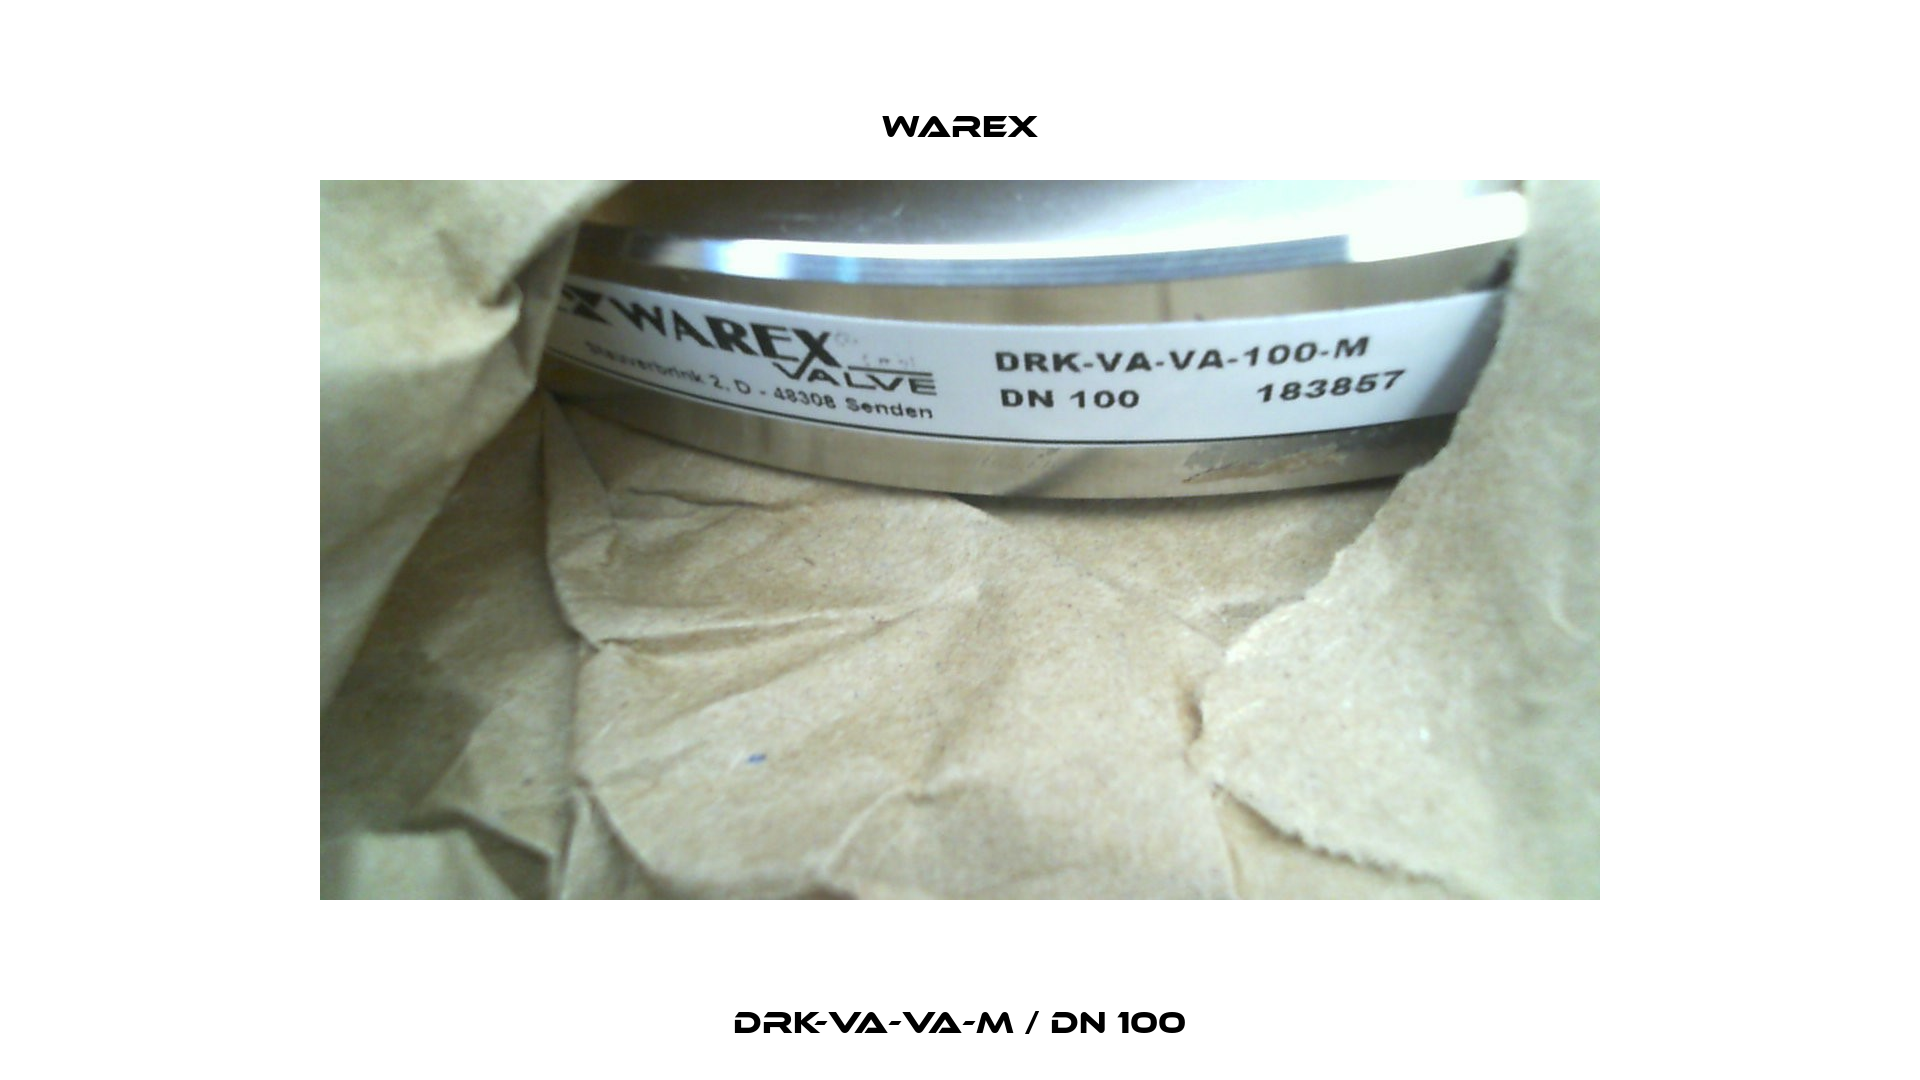 DRK-VA-VA-M / DN 100 Warex